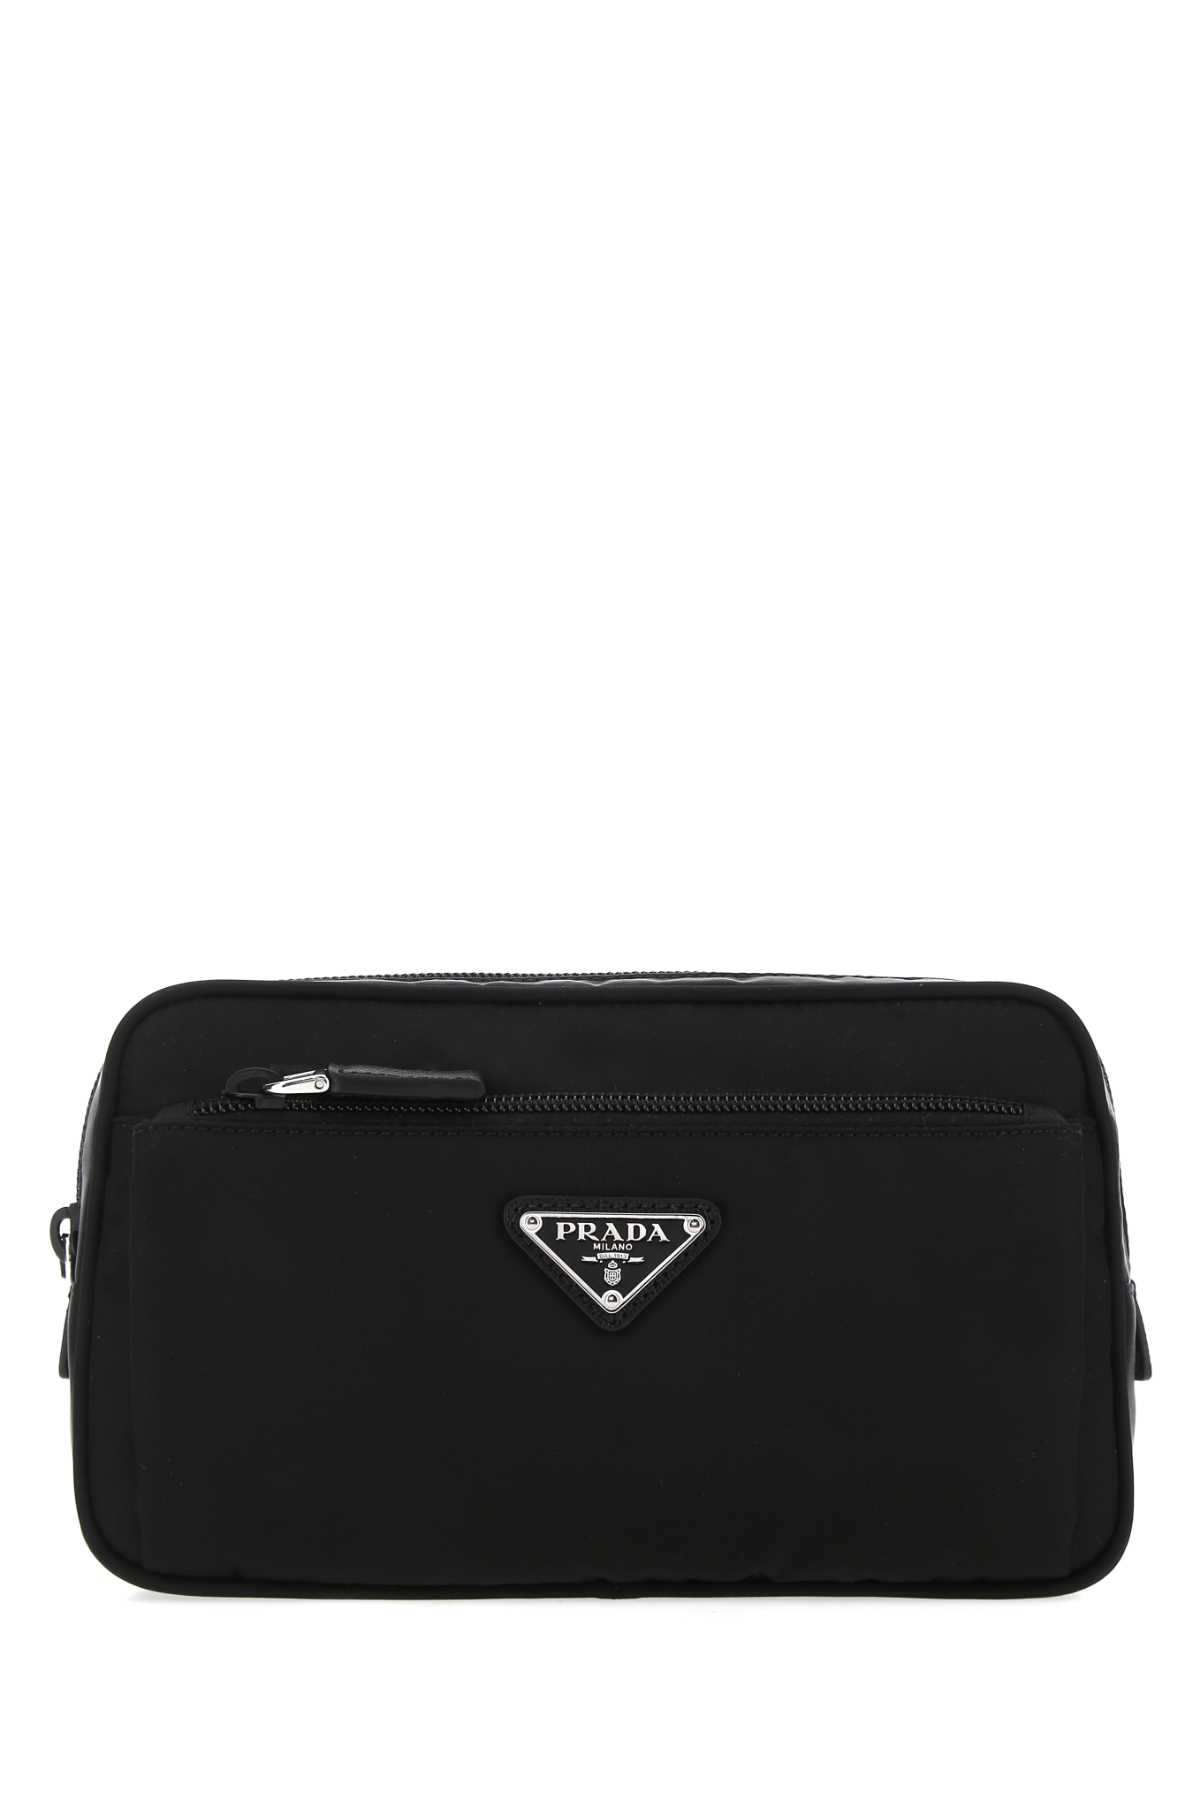 Prada Black Re-nylon Belt Bag In Nero